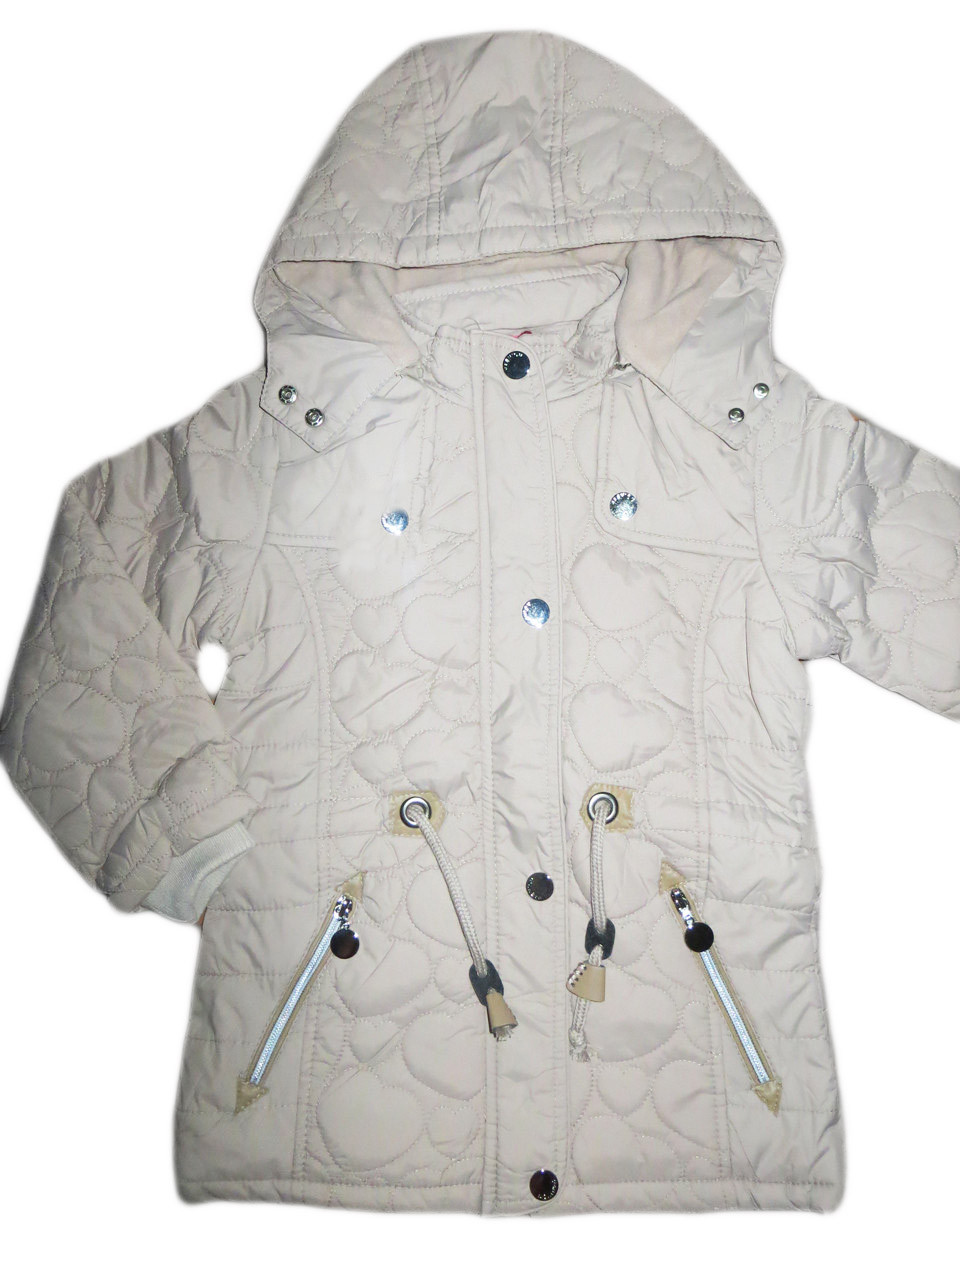 Куртка для дівчинки на флісі, GRACE, розміри 140, арт. G 50701